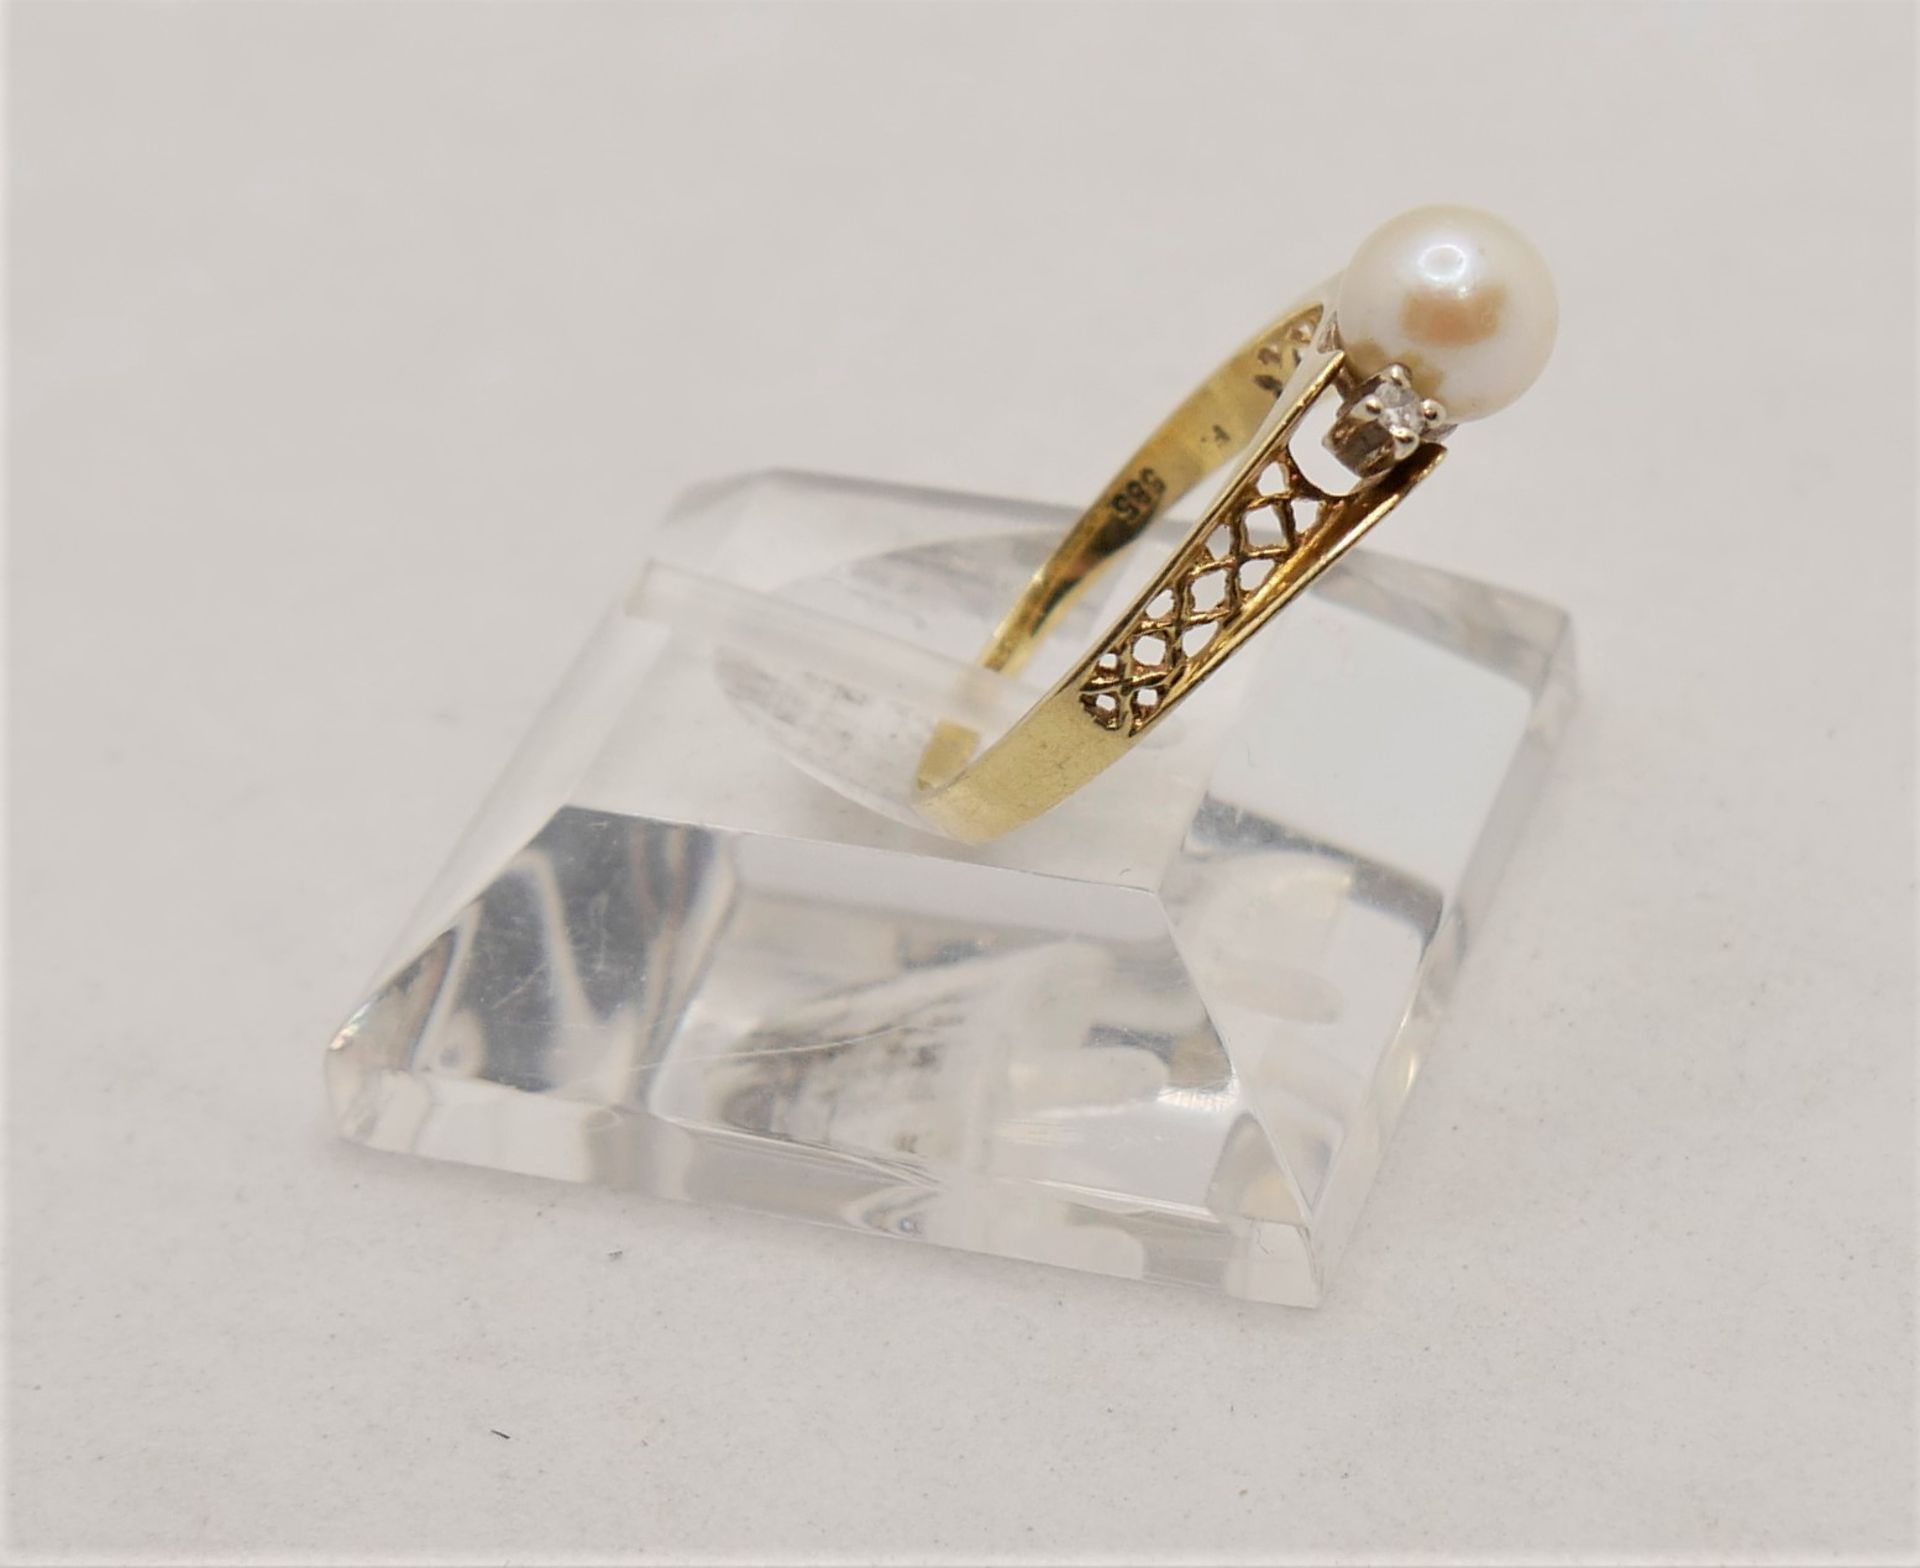 Damenring, 585er Gelbgold, besetzt mit einer Perle sowie 2 Brillianten. Ringgröße 60,5 - Bild 2 aus 3